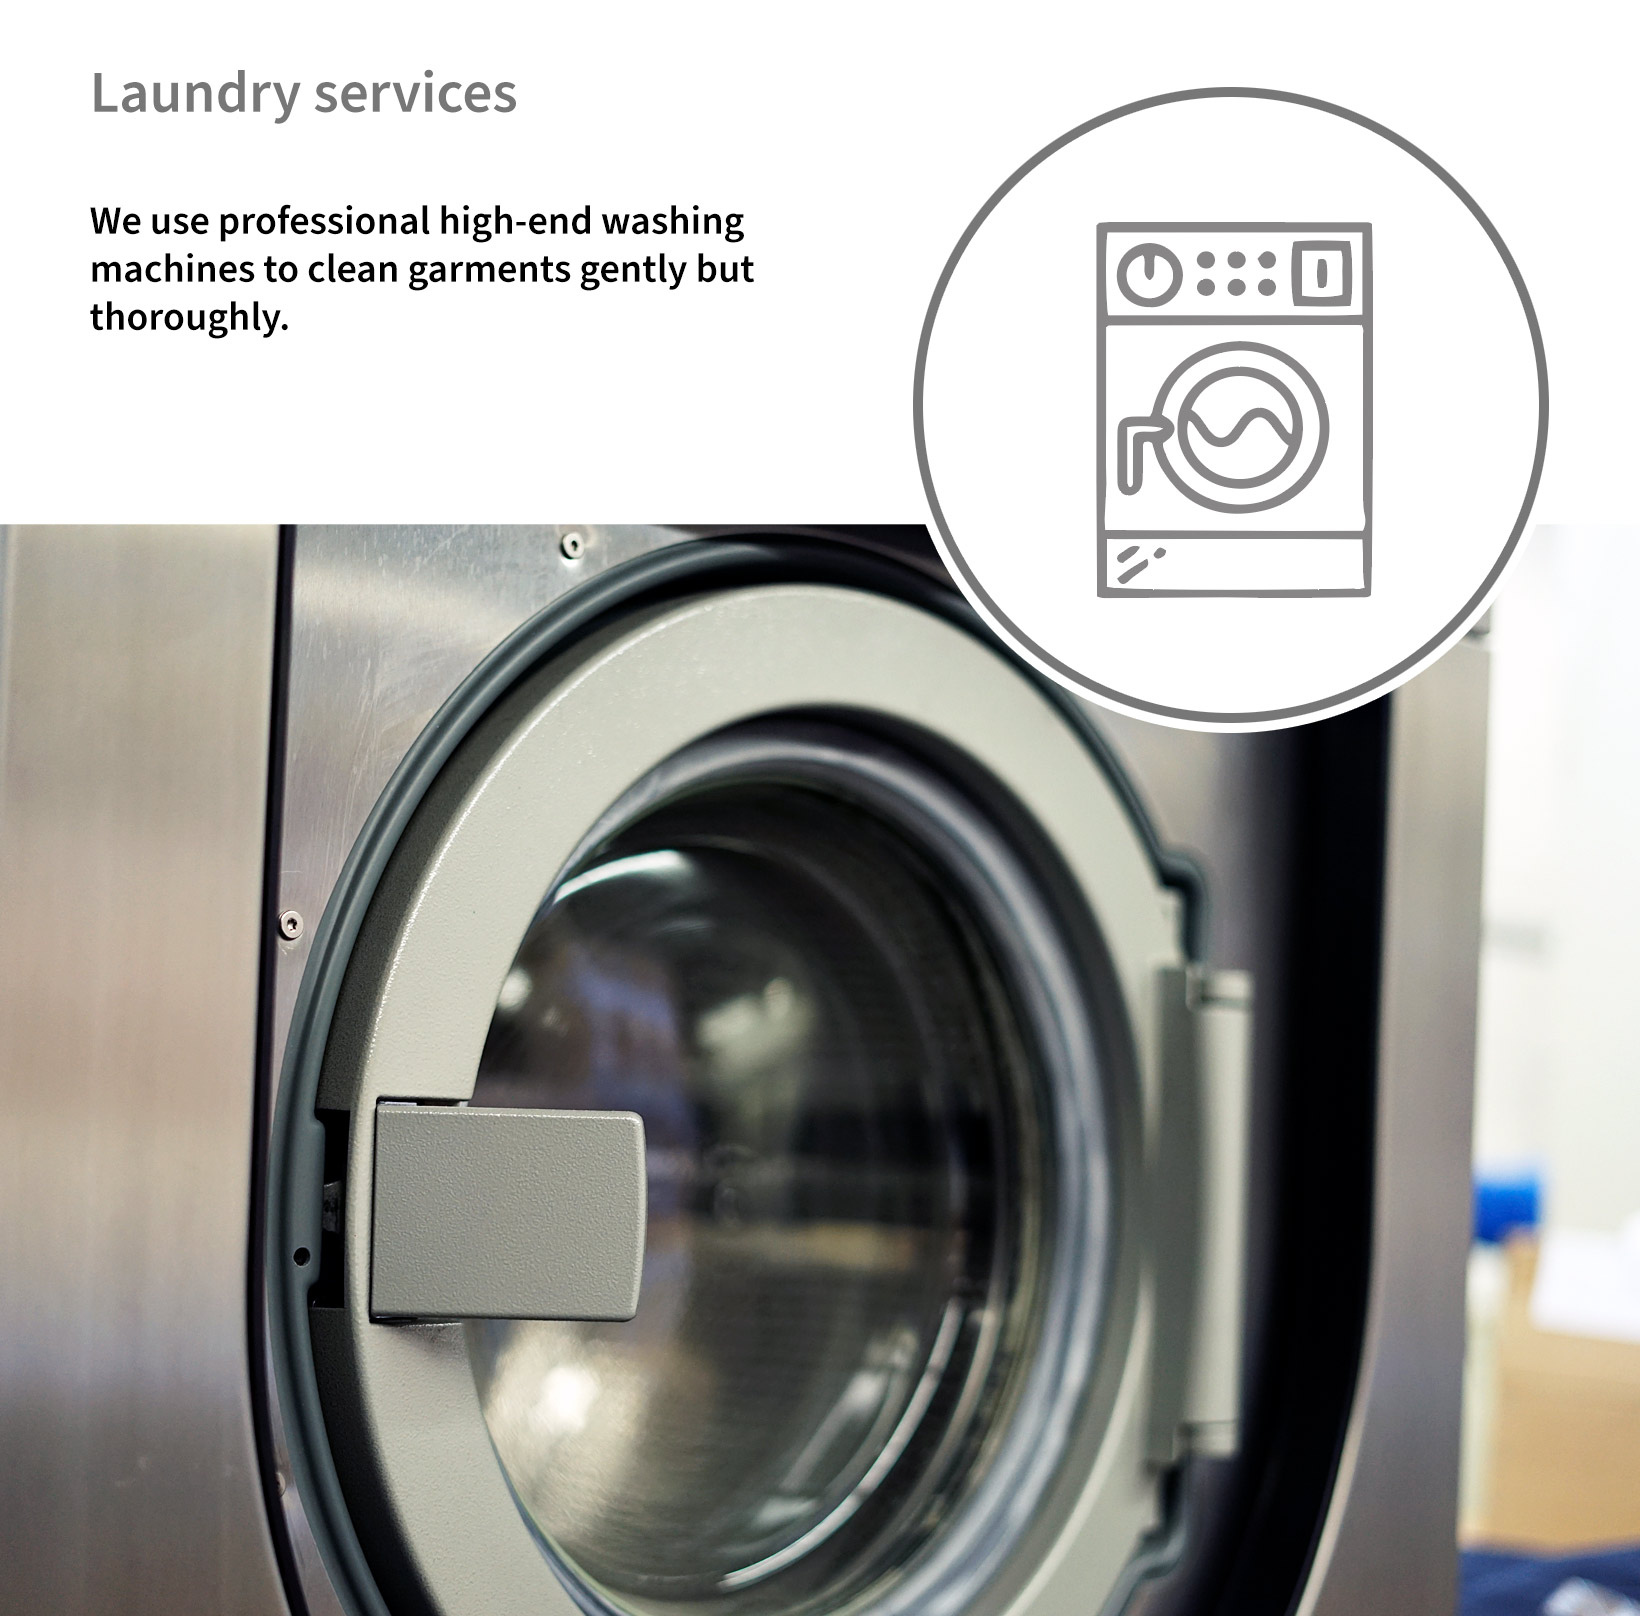 Audis Laundry services